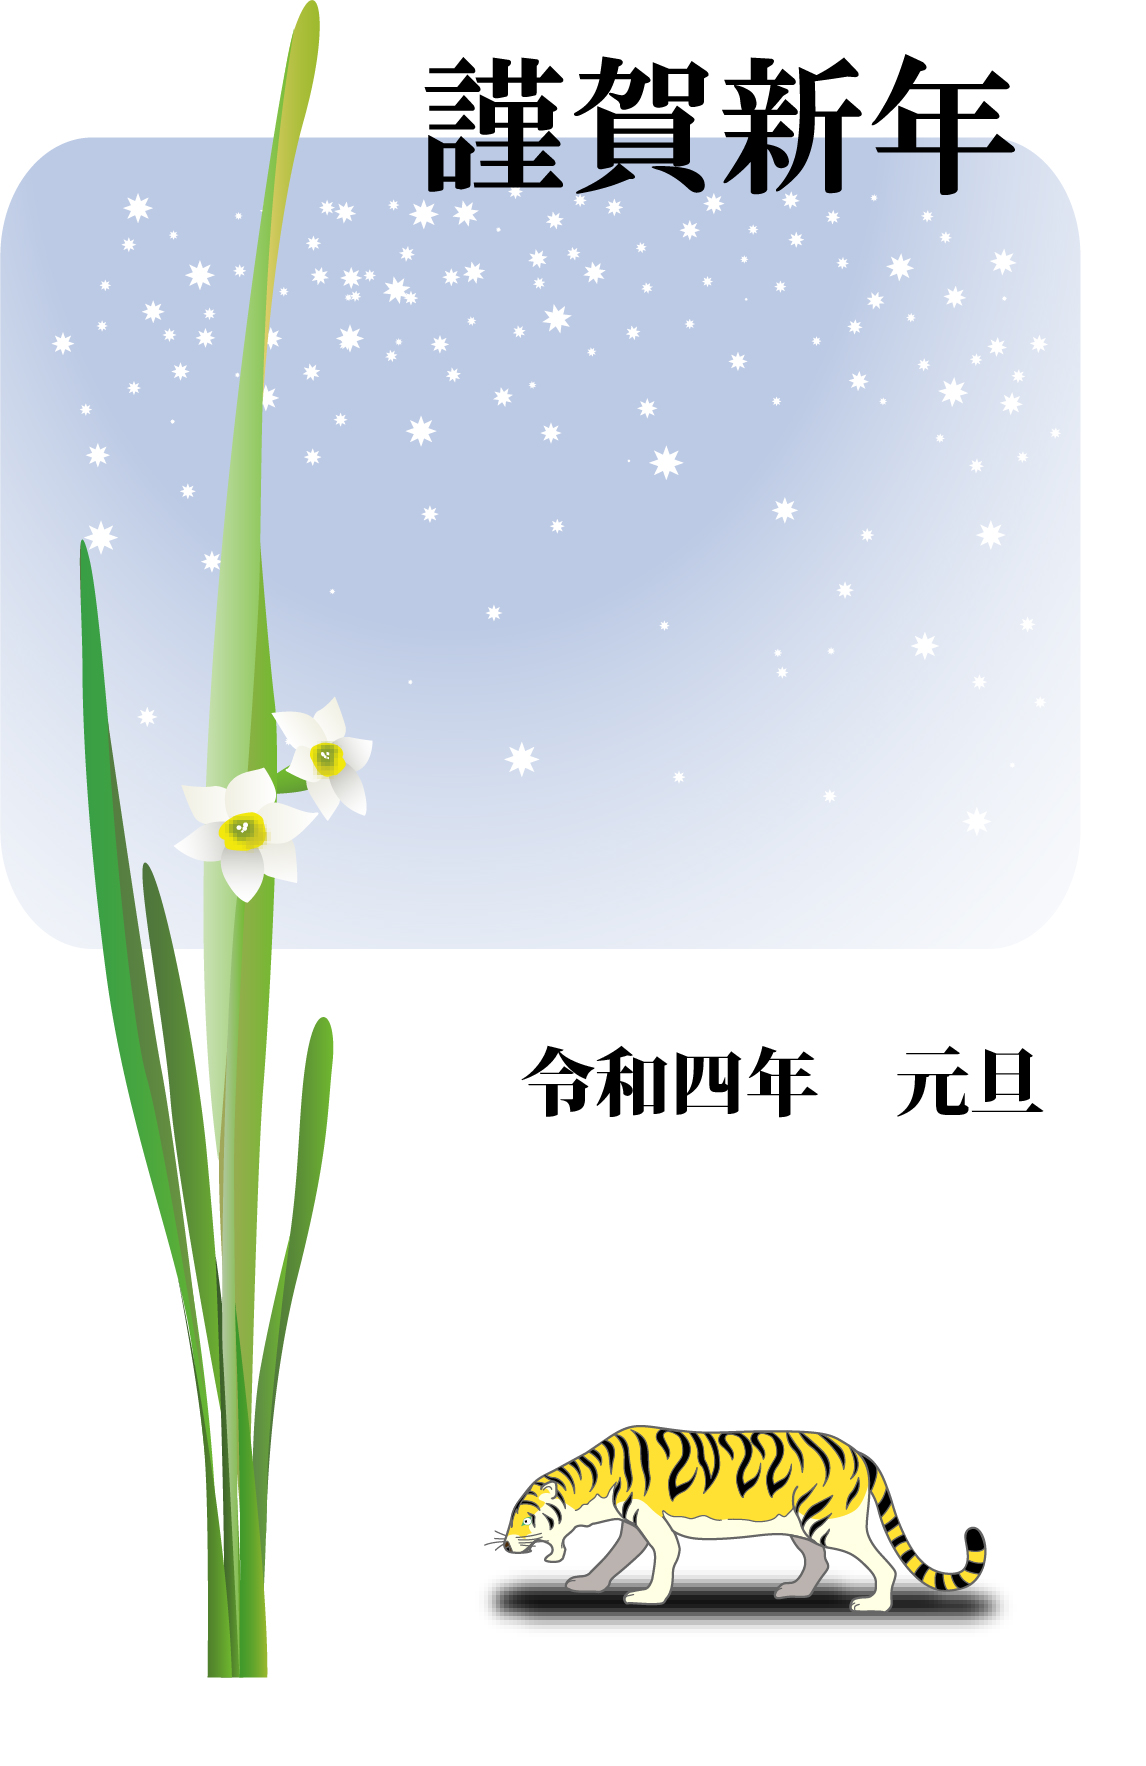 寅・雪空・水仙☆冬の風物詩が描かれた美しいデザイン！目上の方におすすめ年賀状